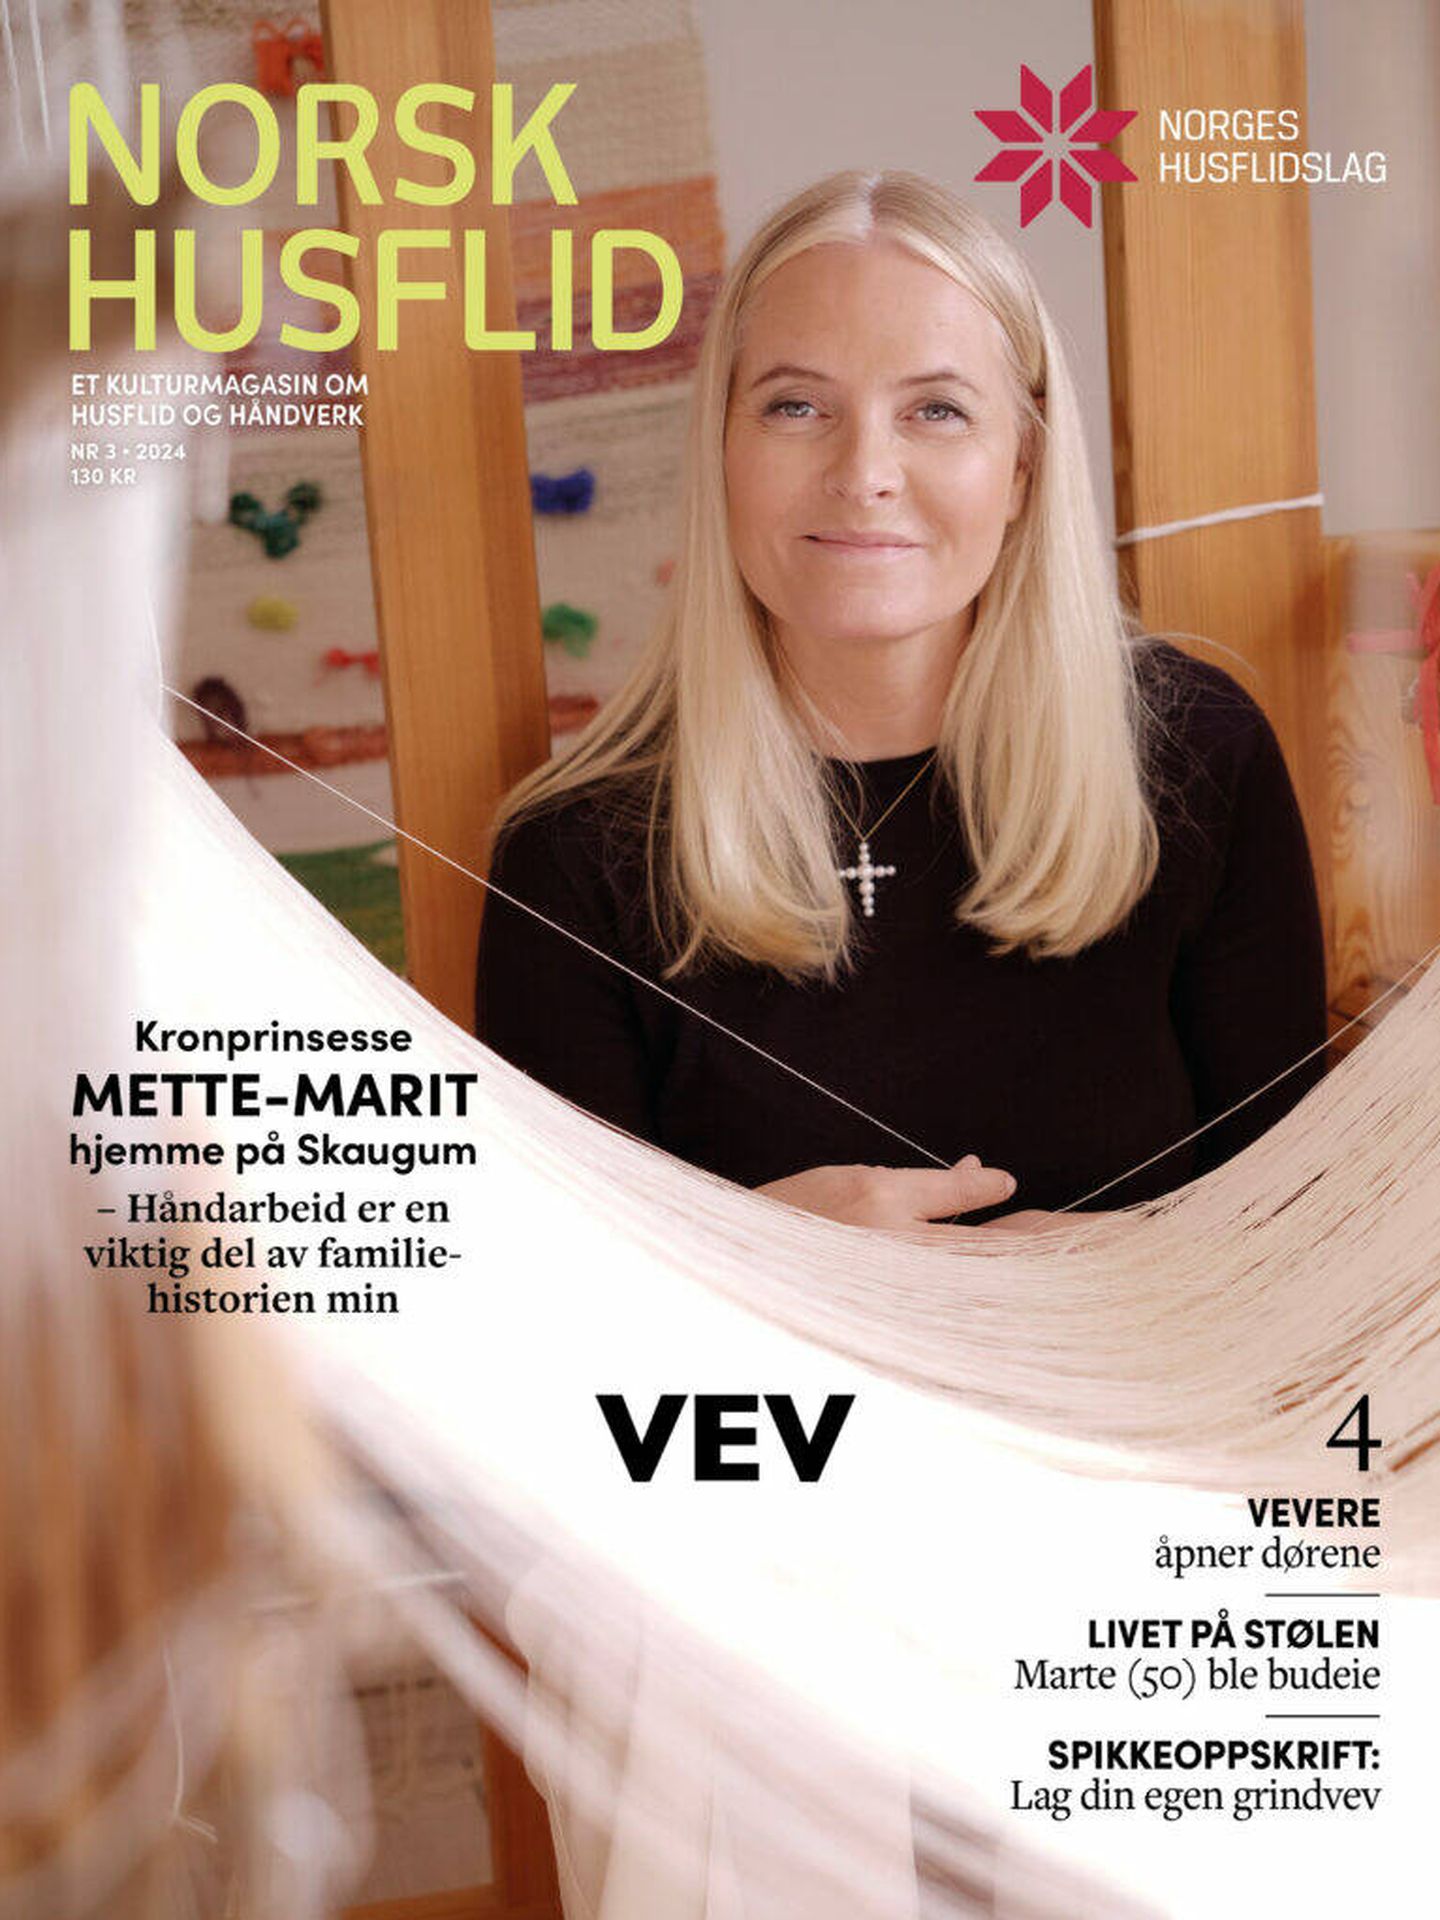 Mette-Marit, en la portada de la revista 'Norsk Husflid'.